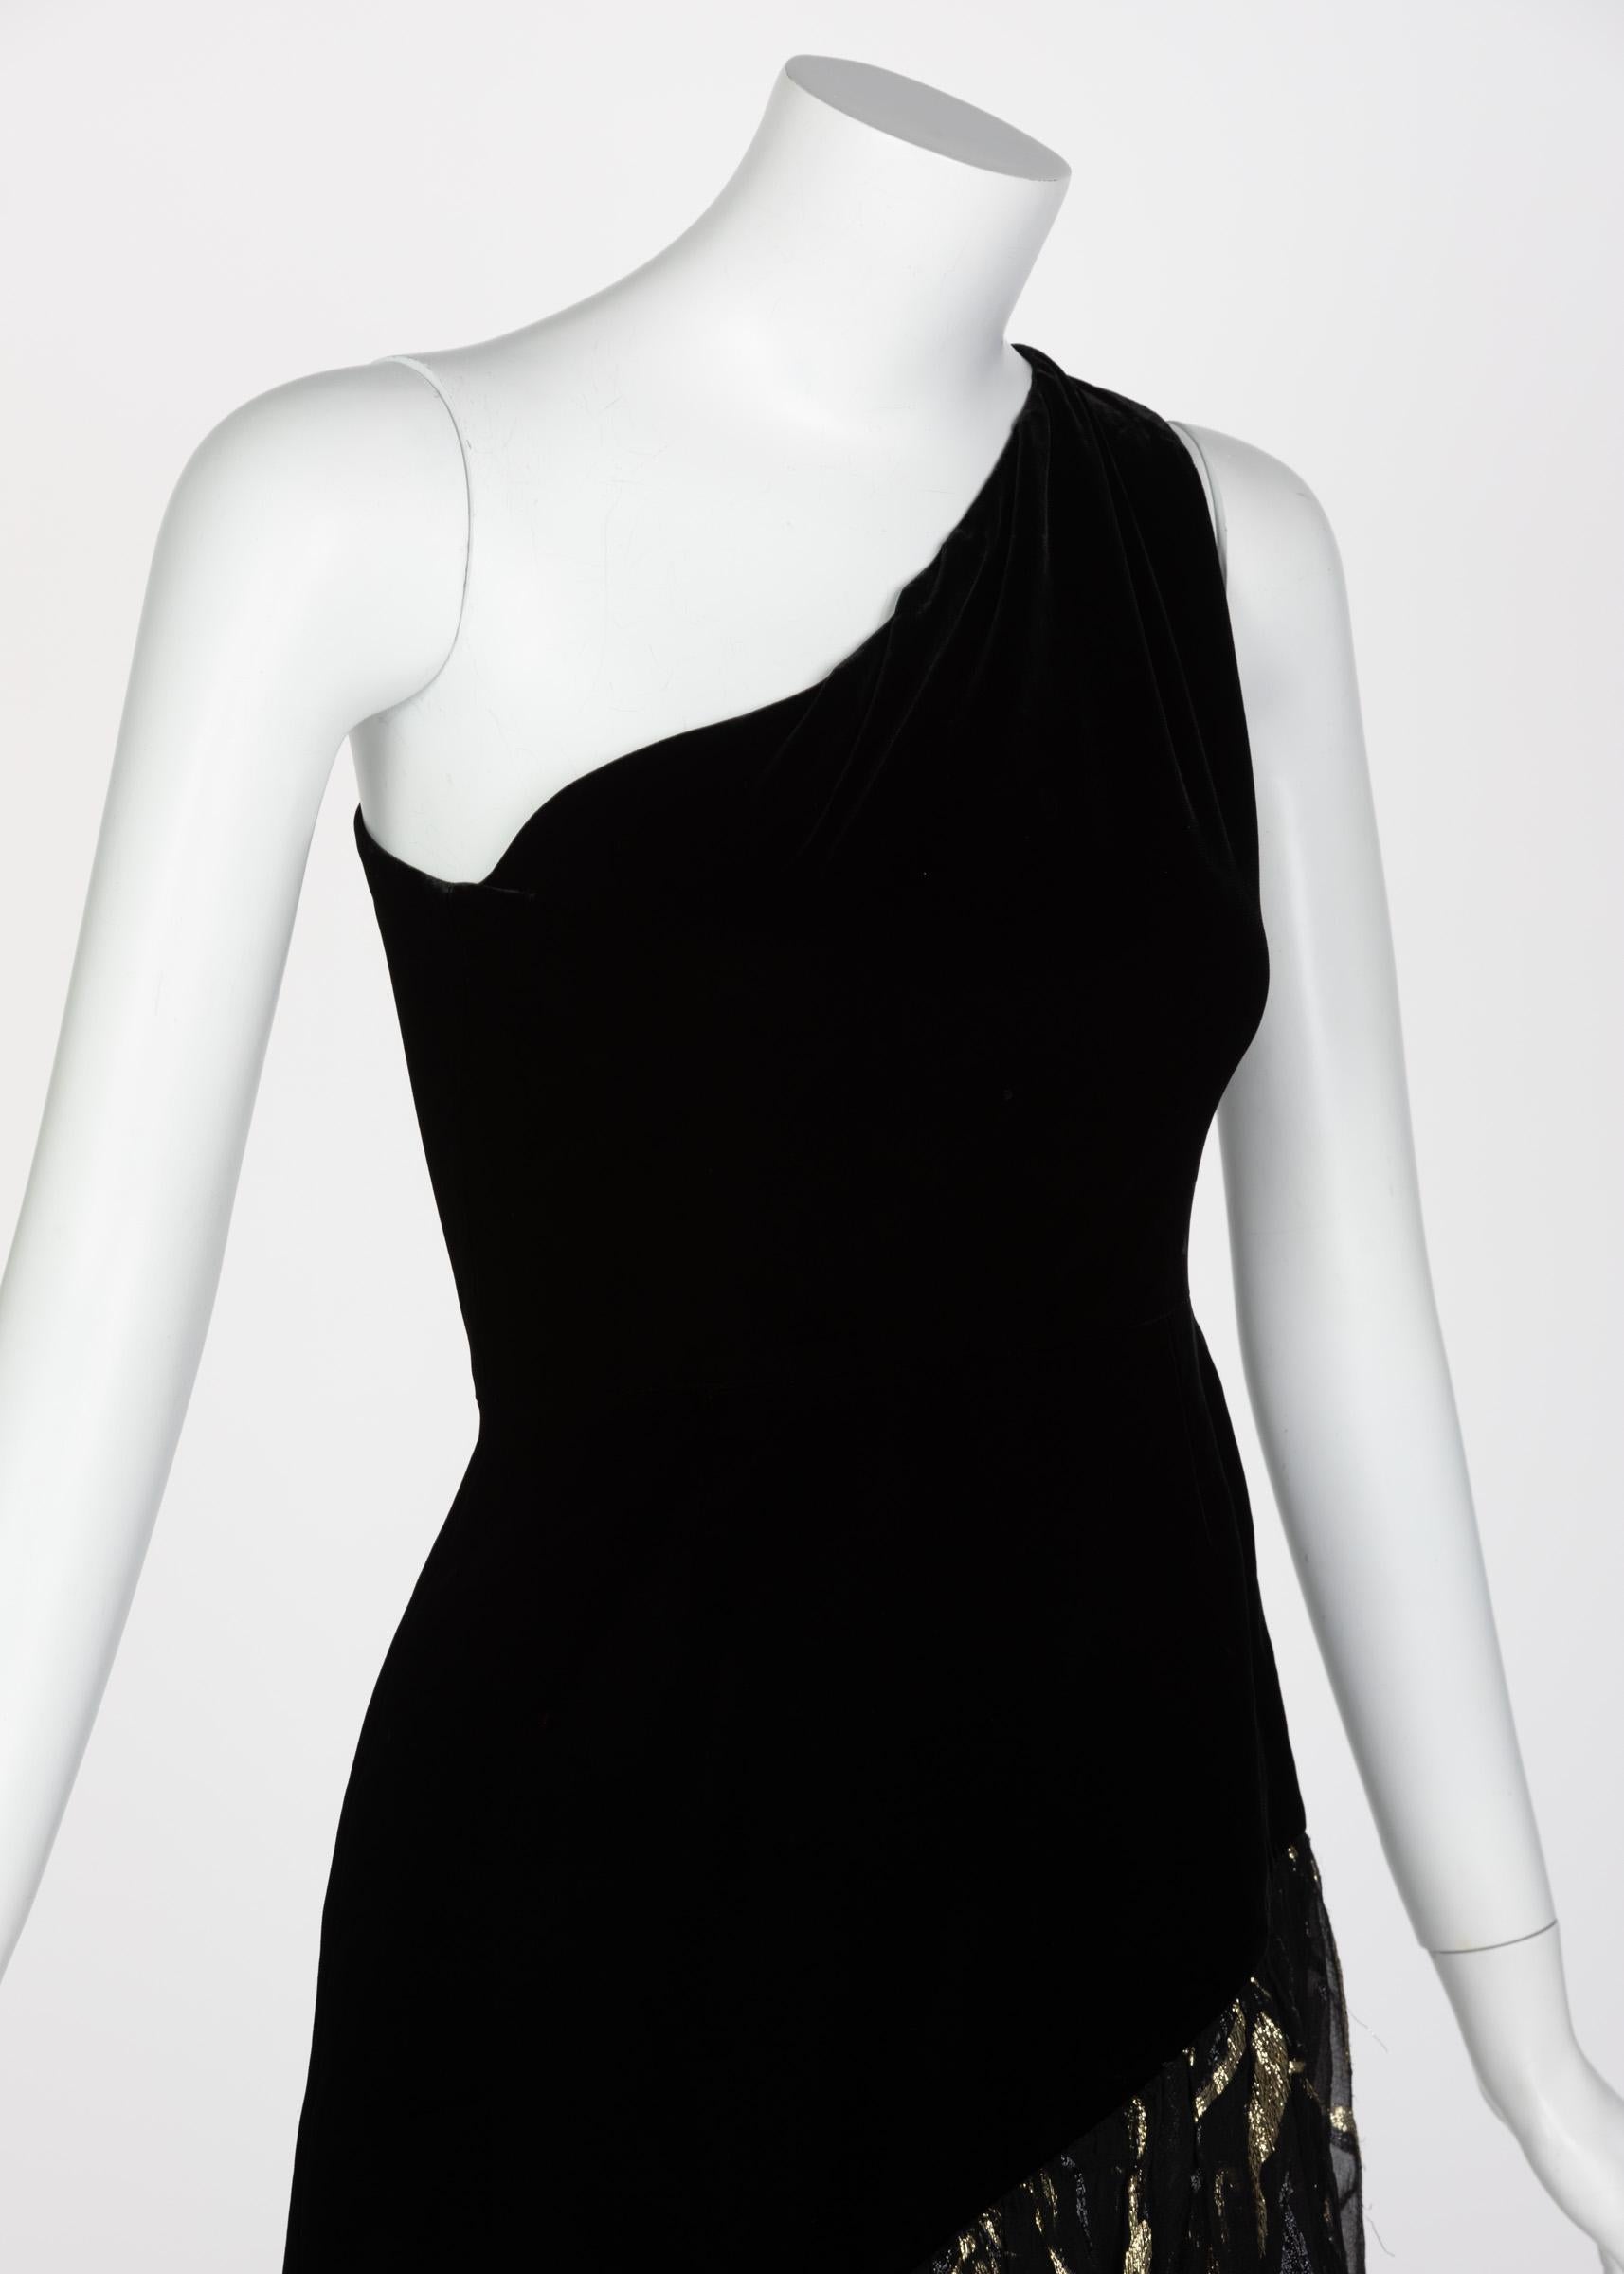 Saint Laurent YSL One shoulder Black Velvet Metallic Layered Dress, 1980s 6